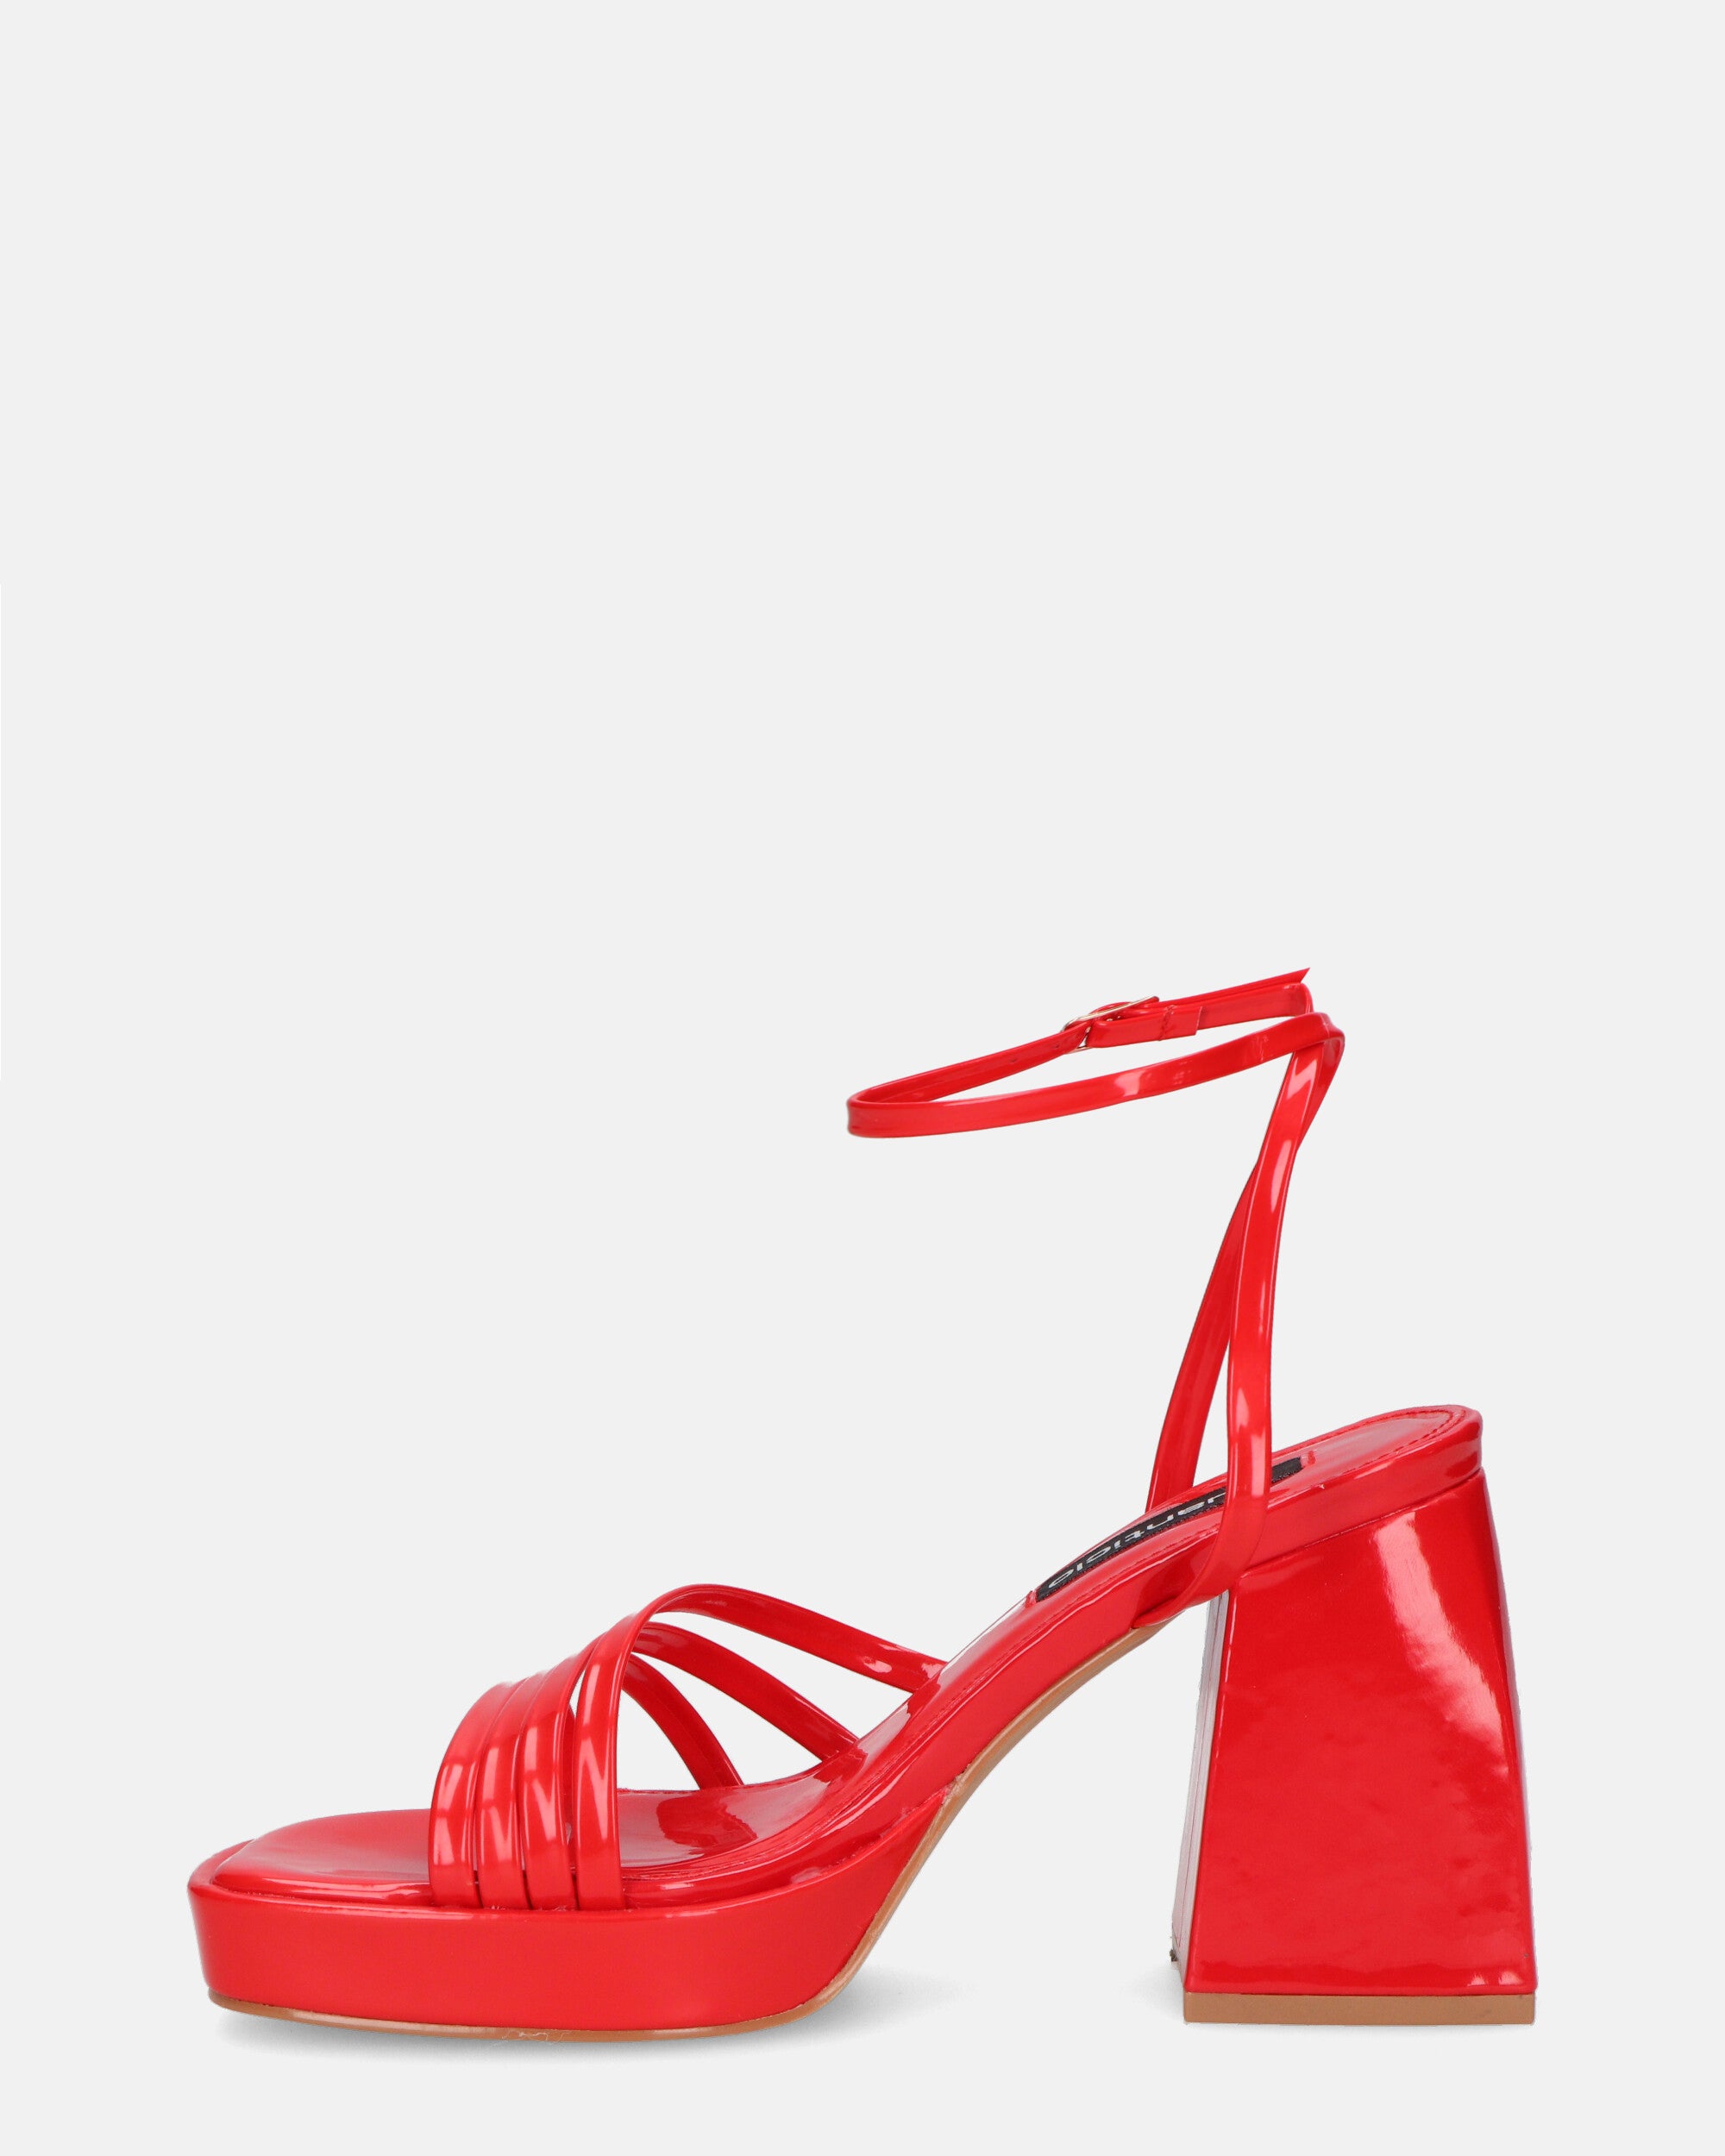 WINONA - sandales en verre rouge à talon carré